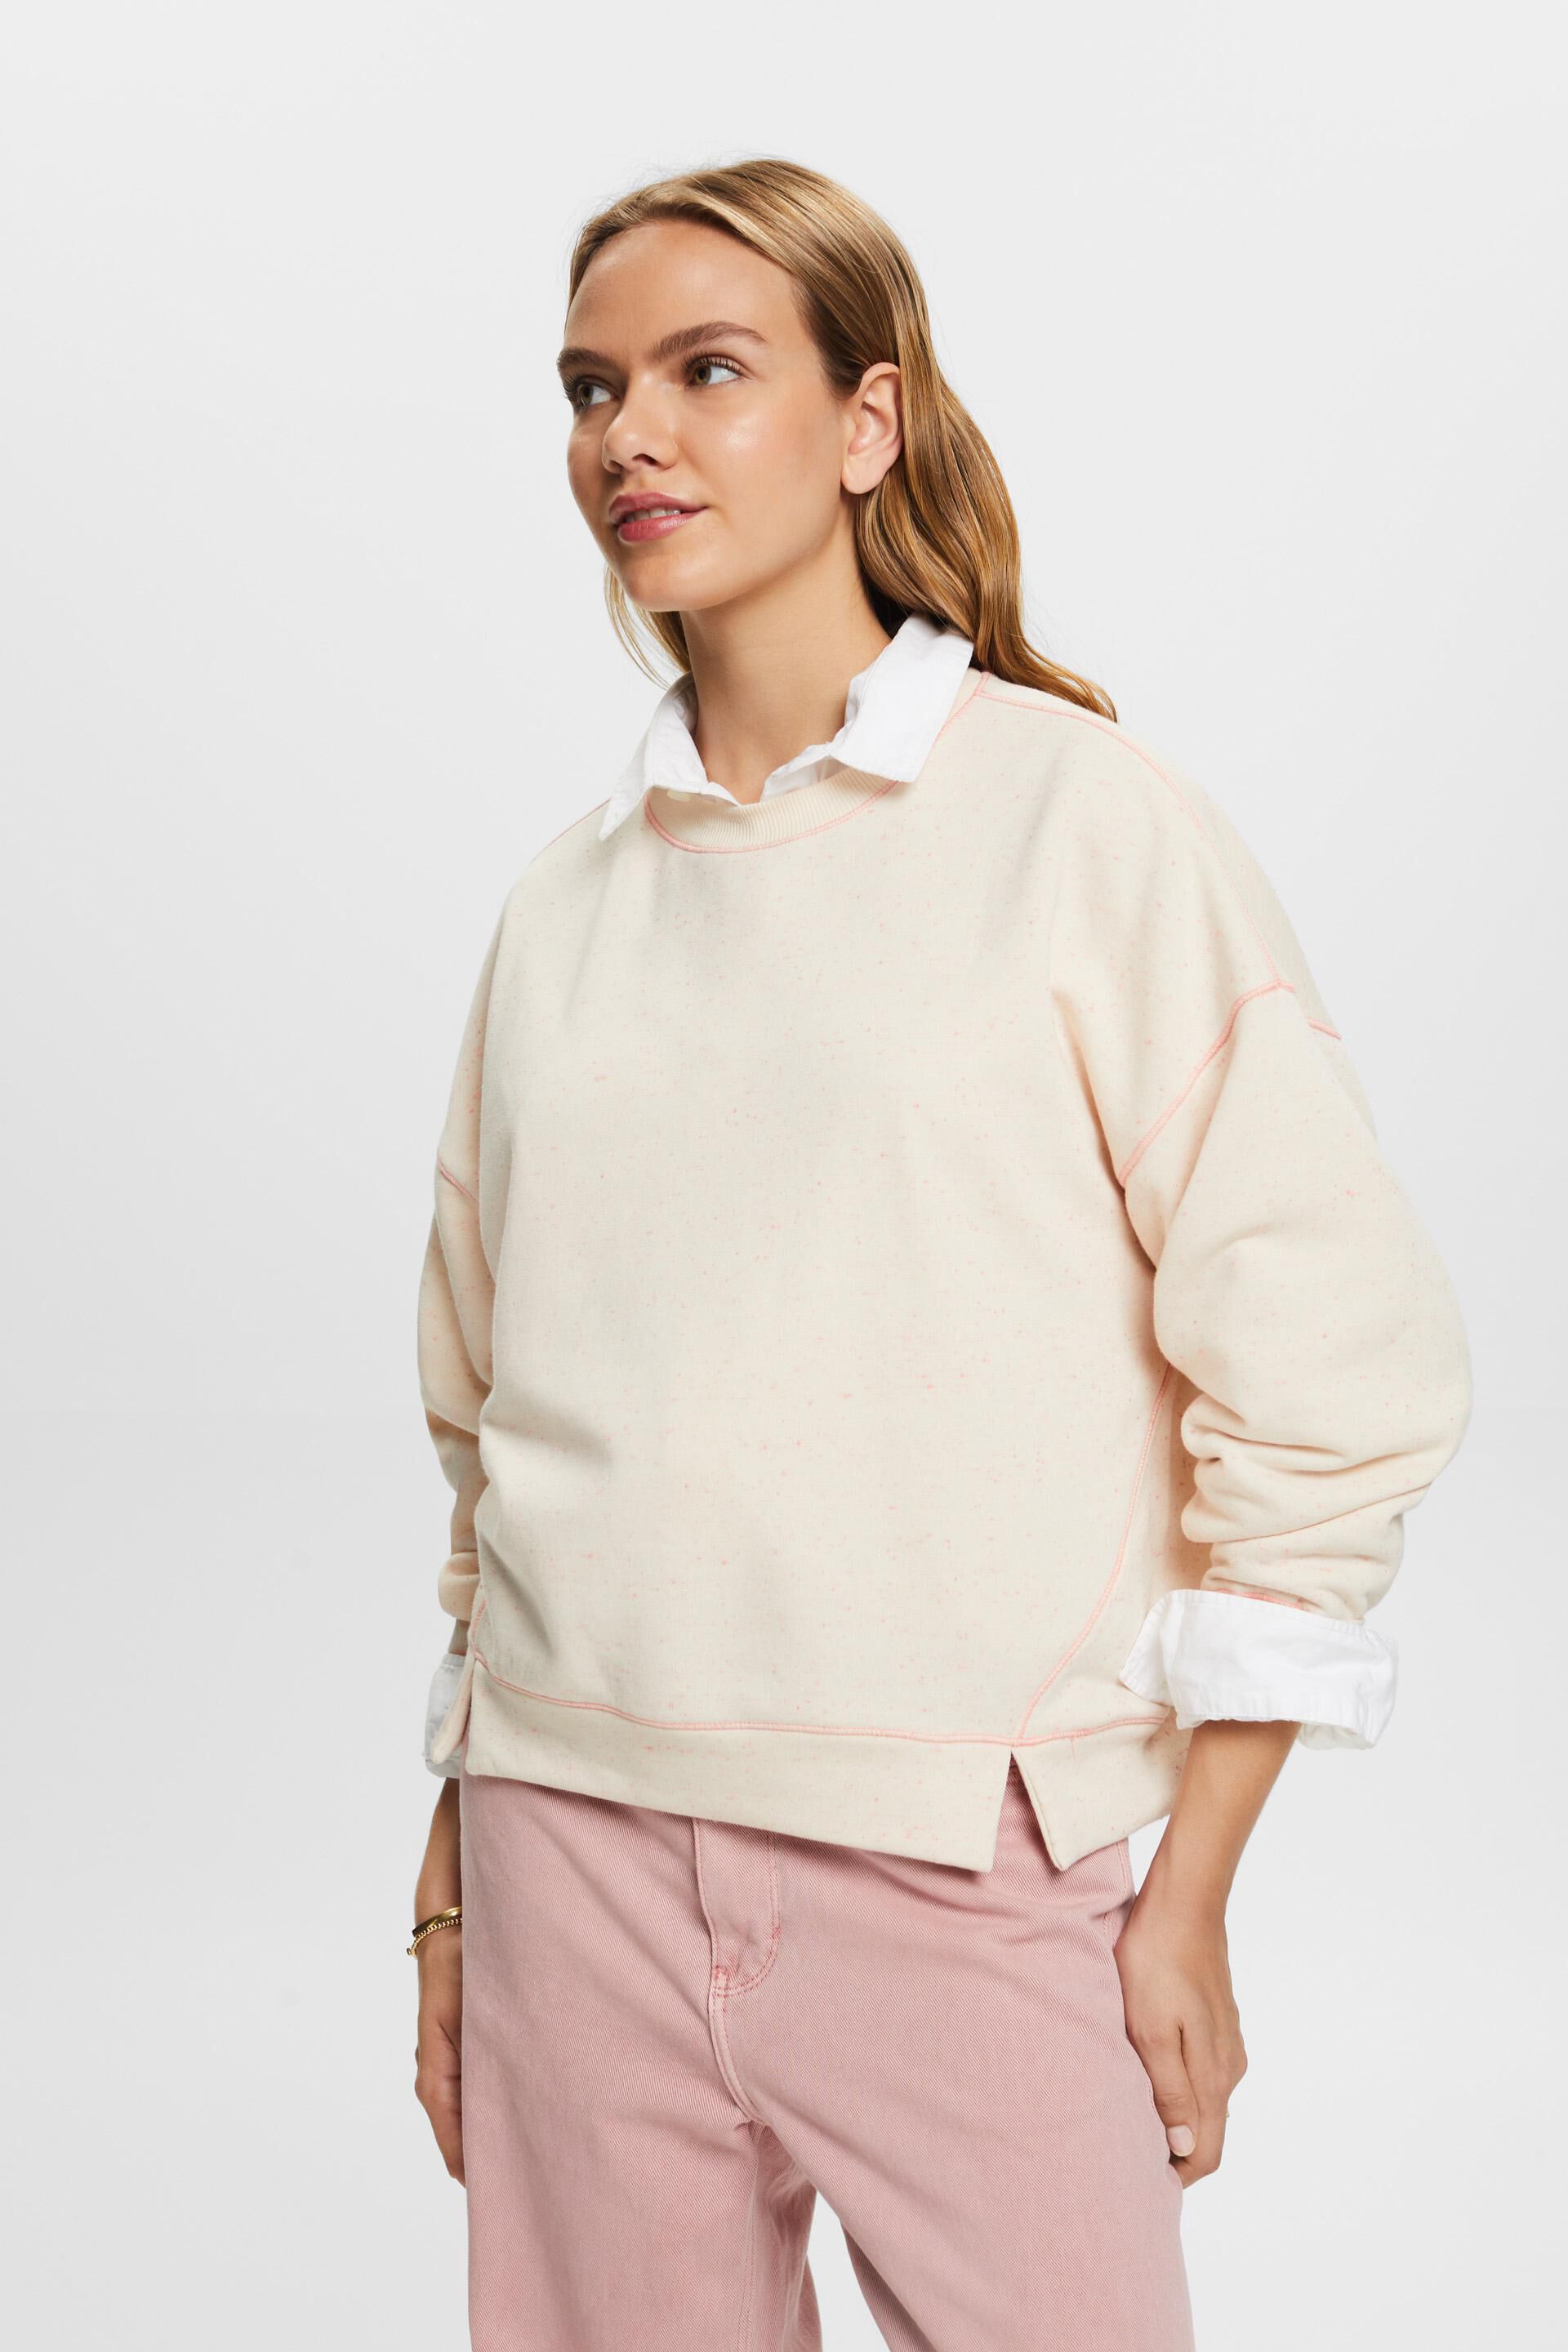 Esprit Sprinkled blend sweatshirt, cotton